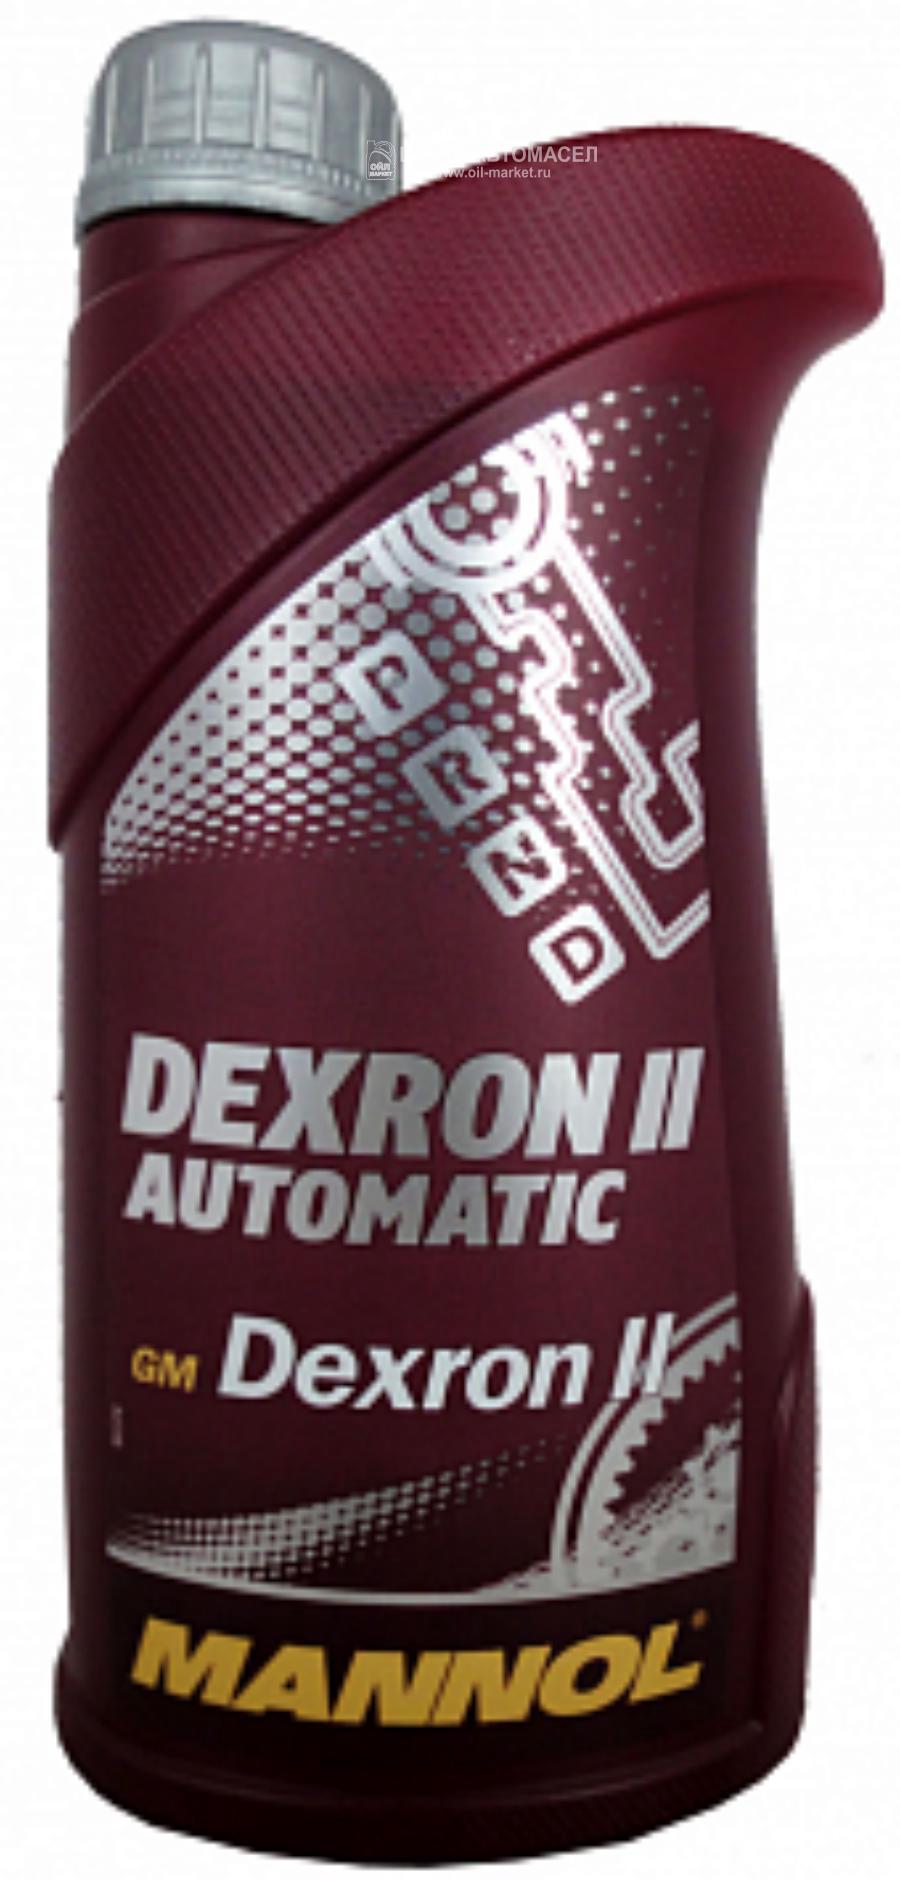 Масло трансмиссионное полусинтетическое Dexron II Automatic, 1л